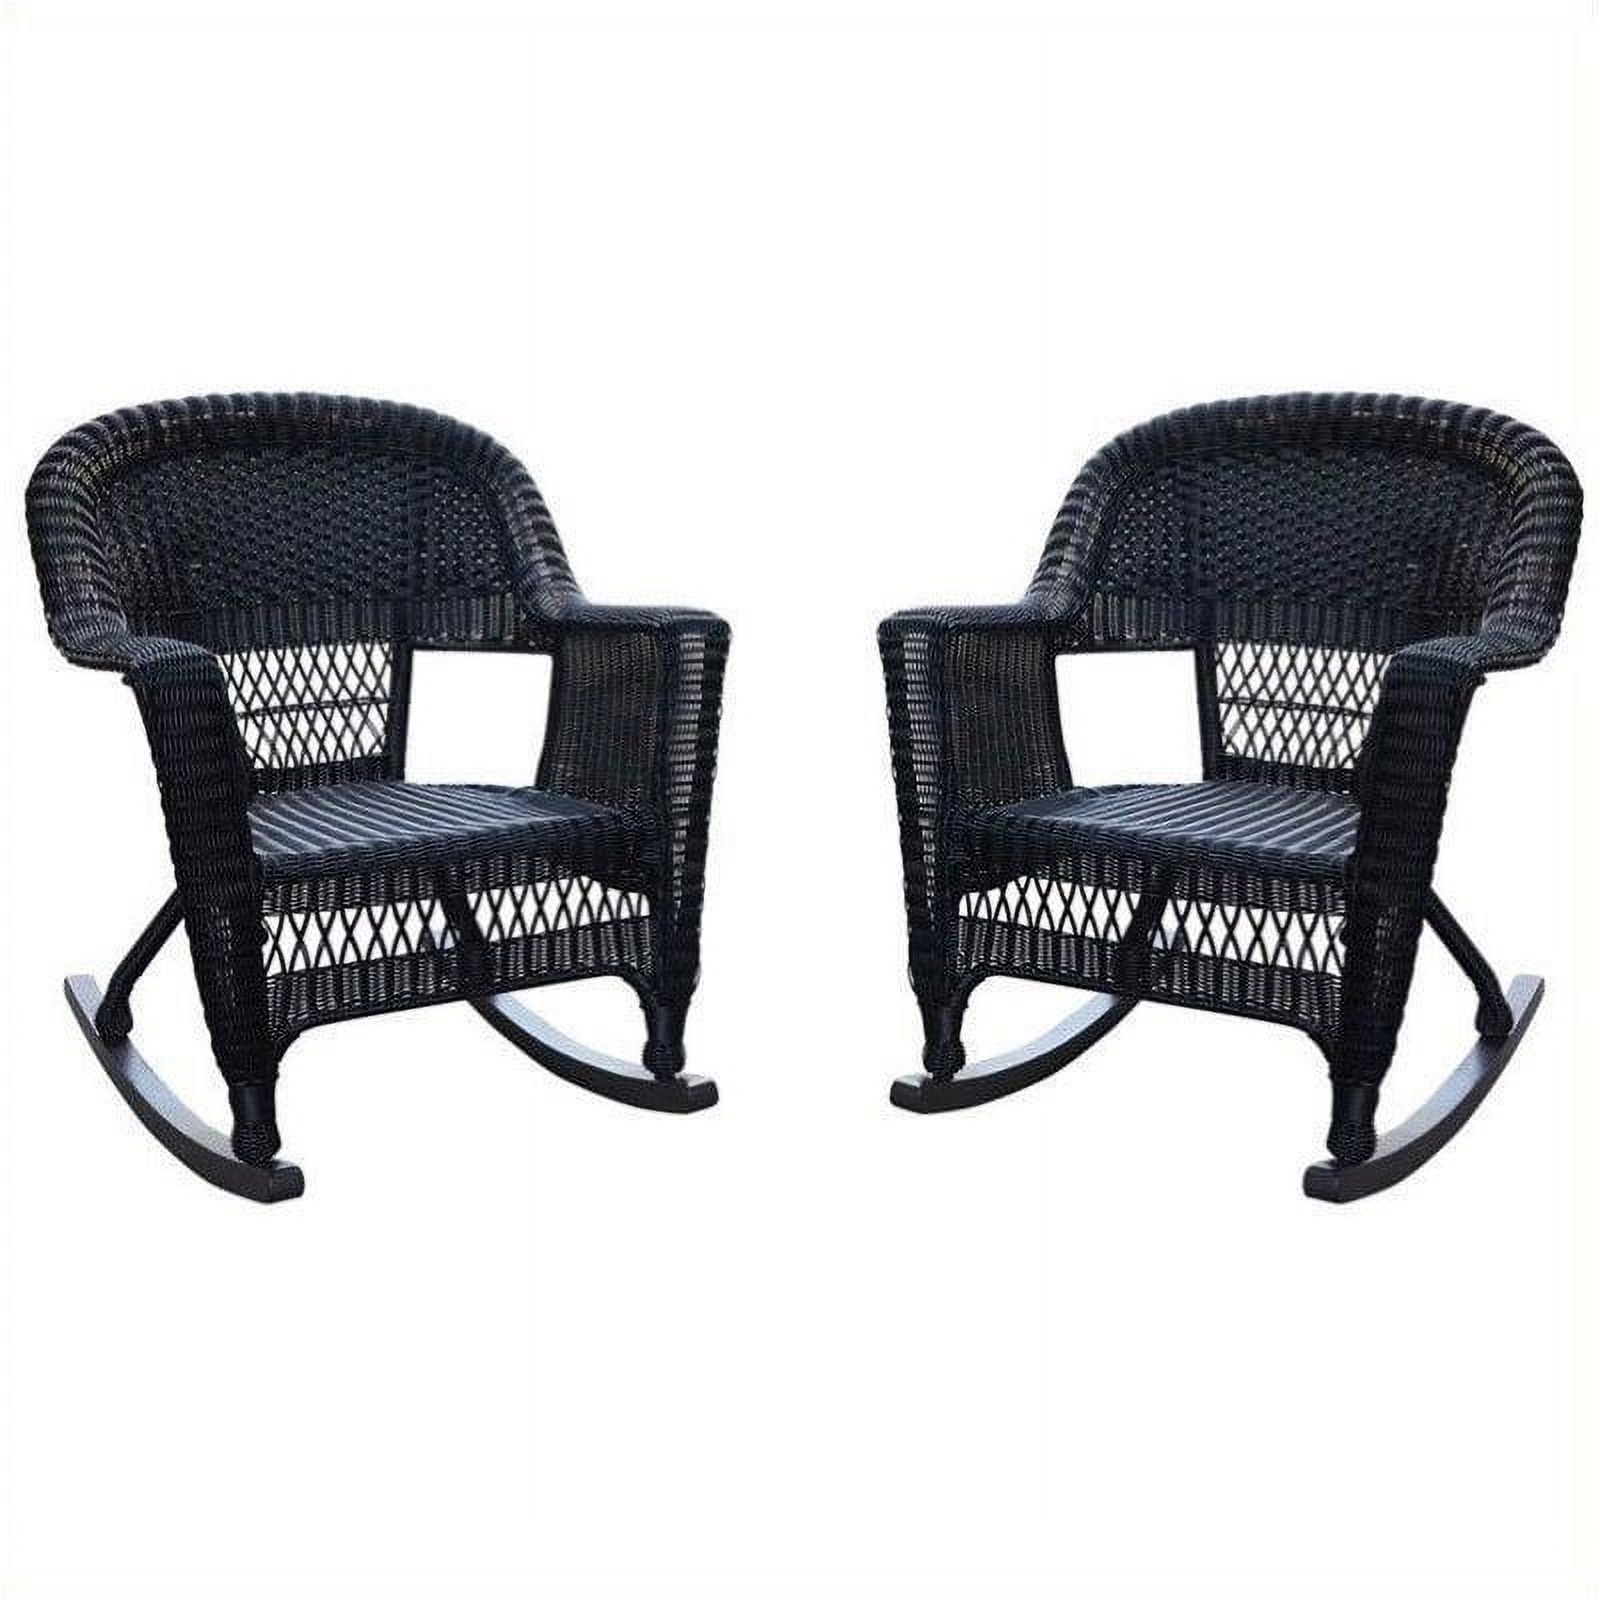 Pemberly Row Wicker Rocker Chair in Black (Set of 2) - image 1 of 2